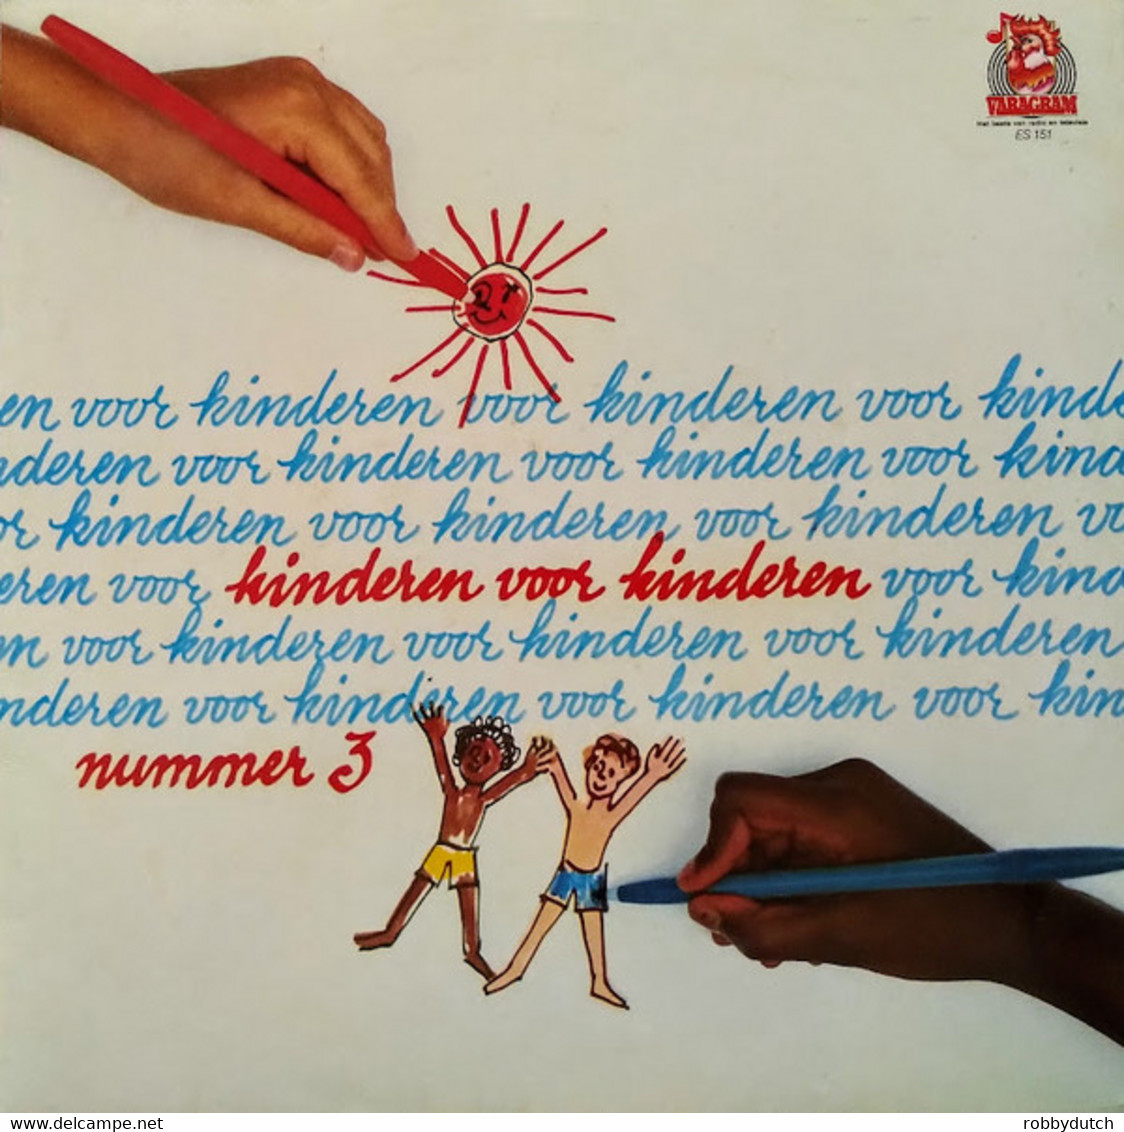 * LP *  KINDEREN VOOR KINDEREN 3 (Holland 1983) - Kinderen